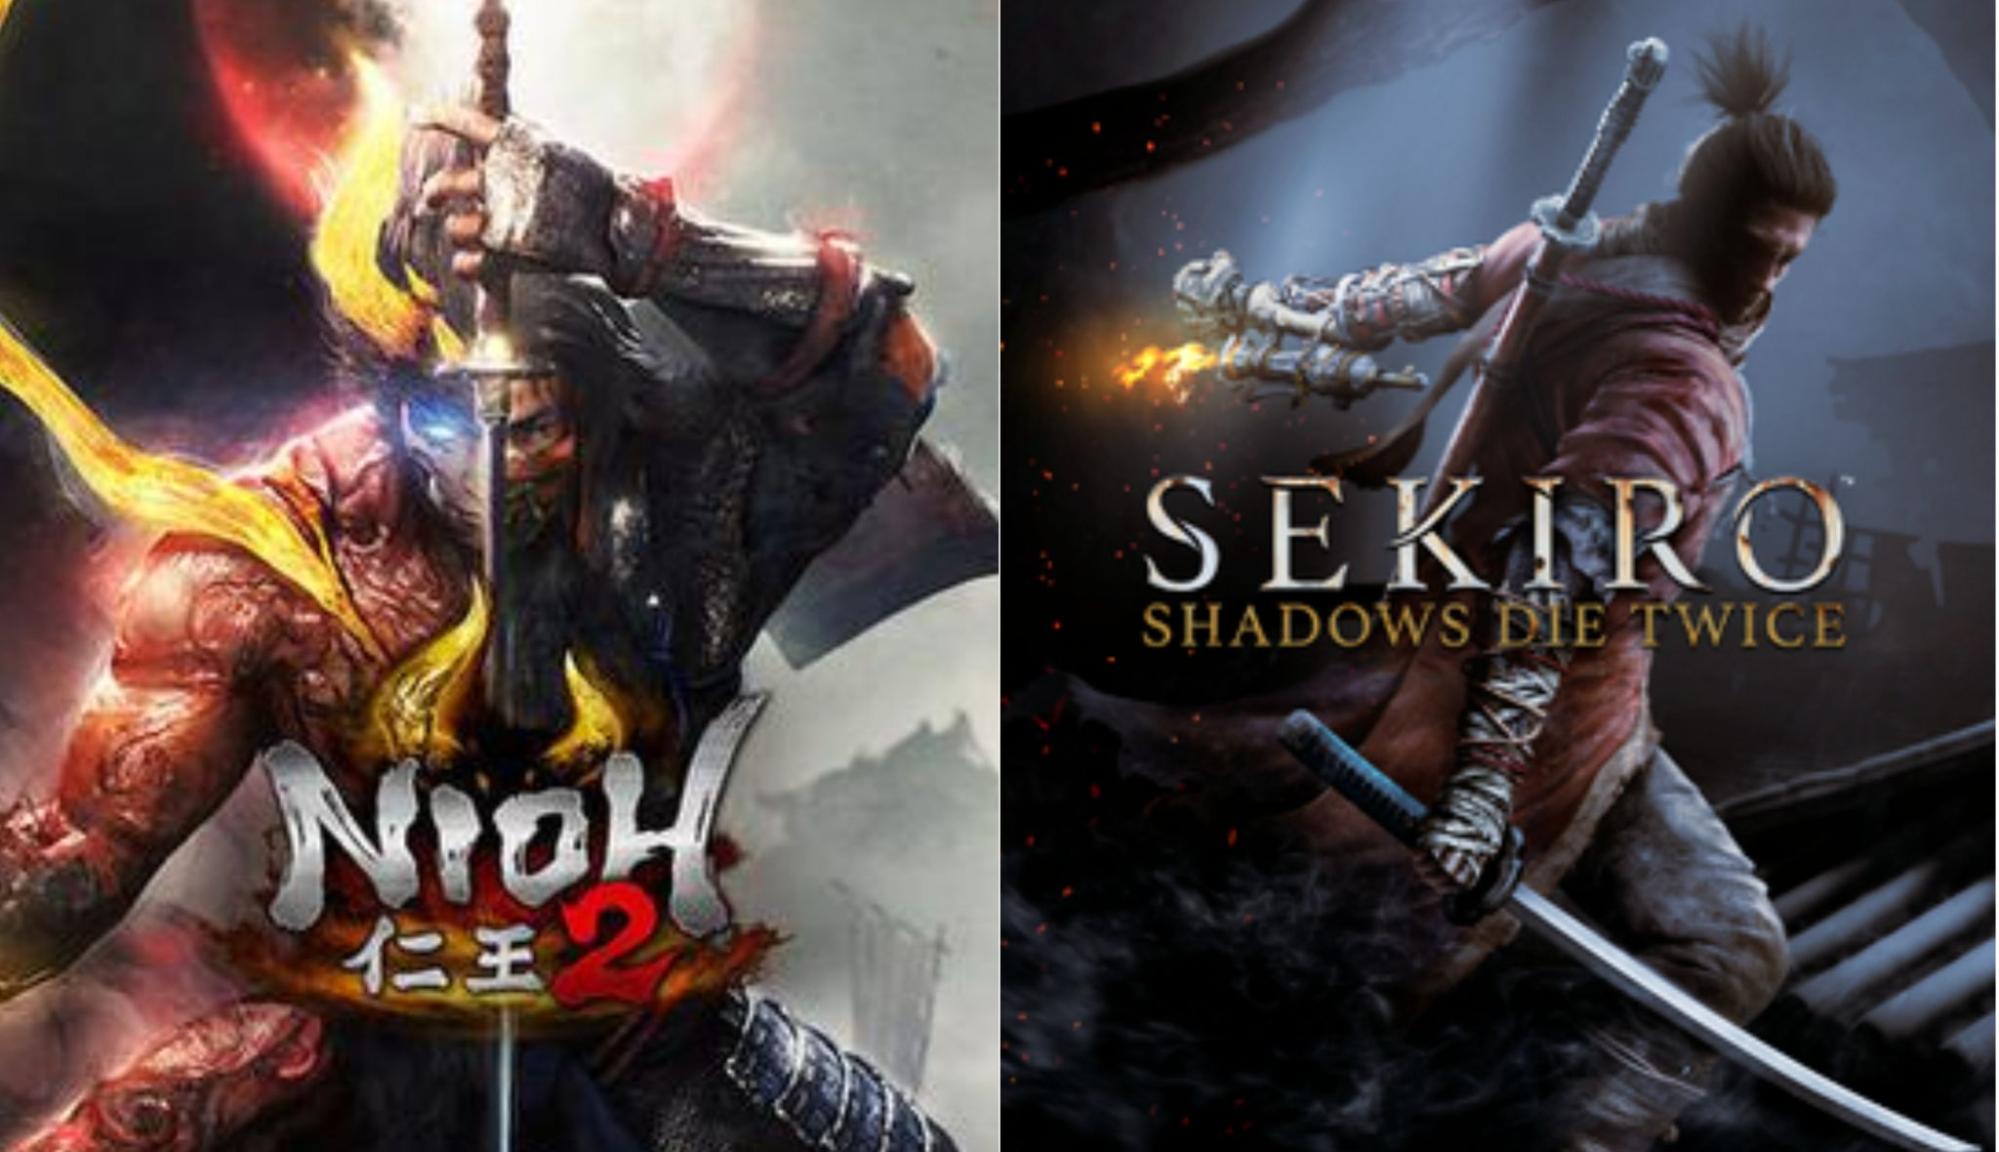 Nioh vs Sekiro - The Samurai Games Contest!